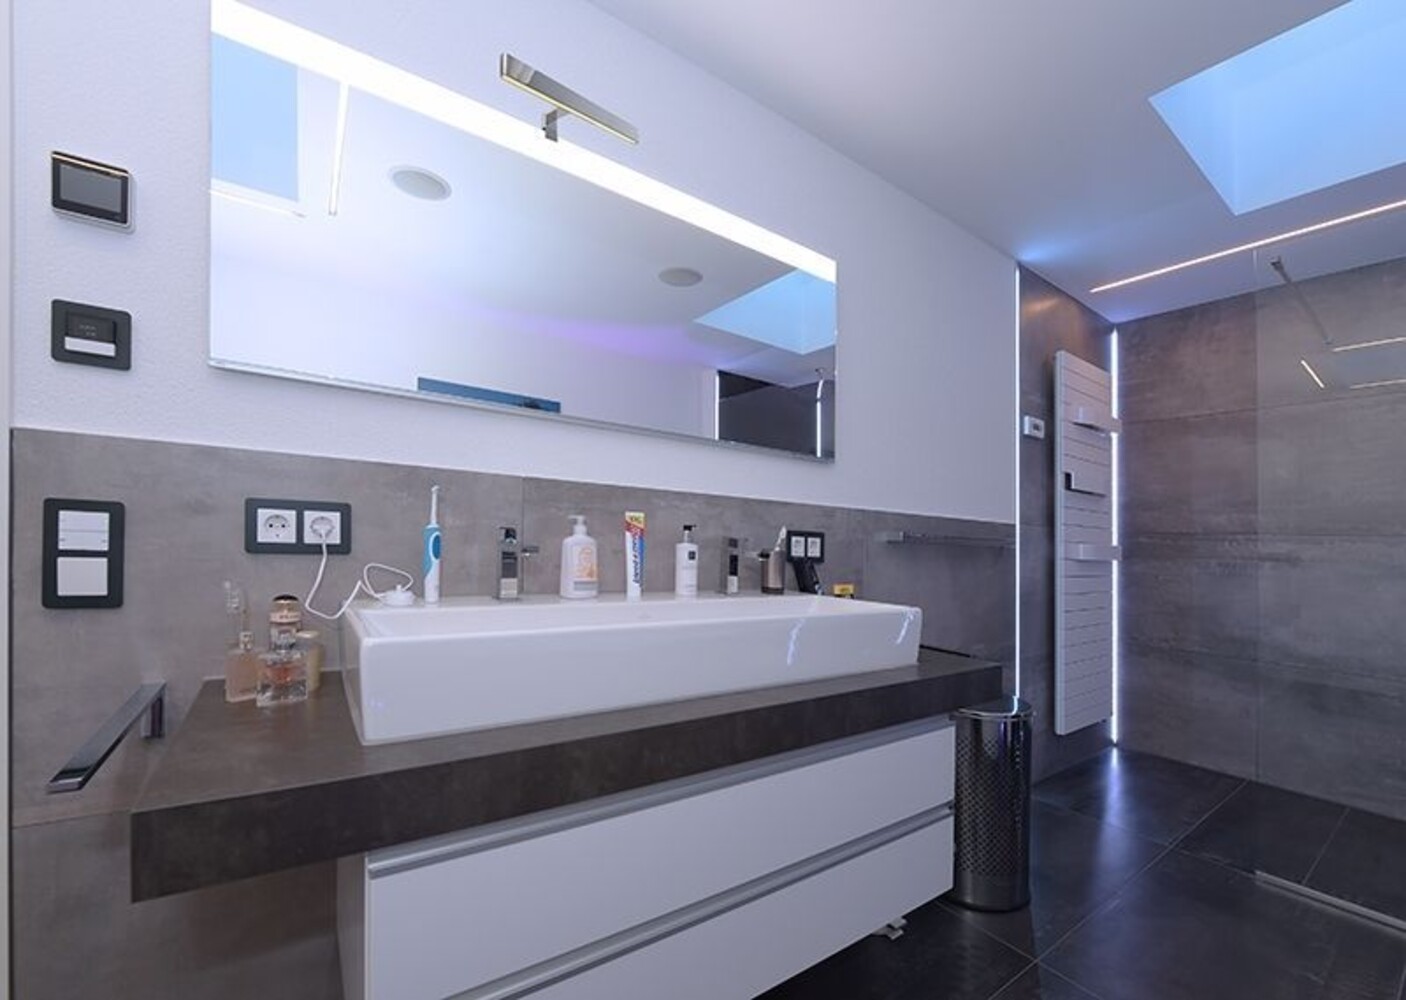 Stilvolle Spiegelleuchte von Deko-Light, perfekt für edles Badezimmer-Design